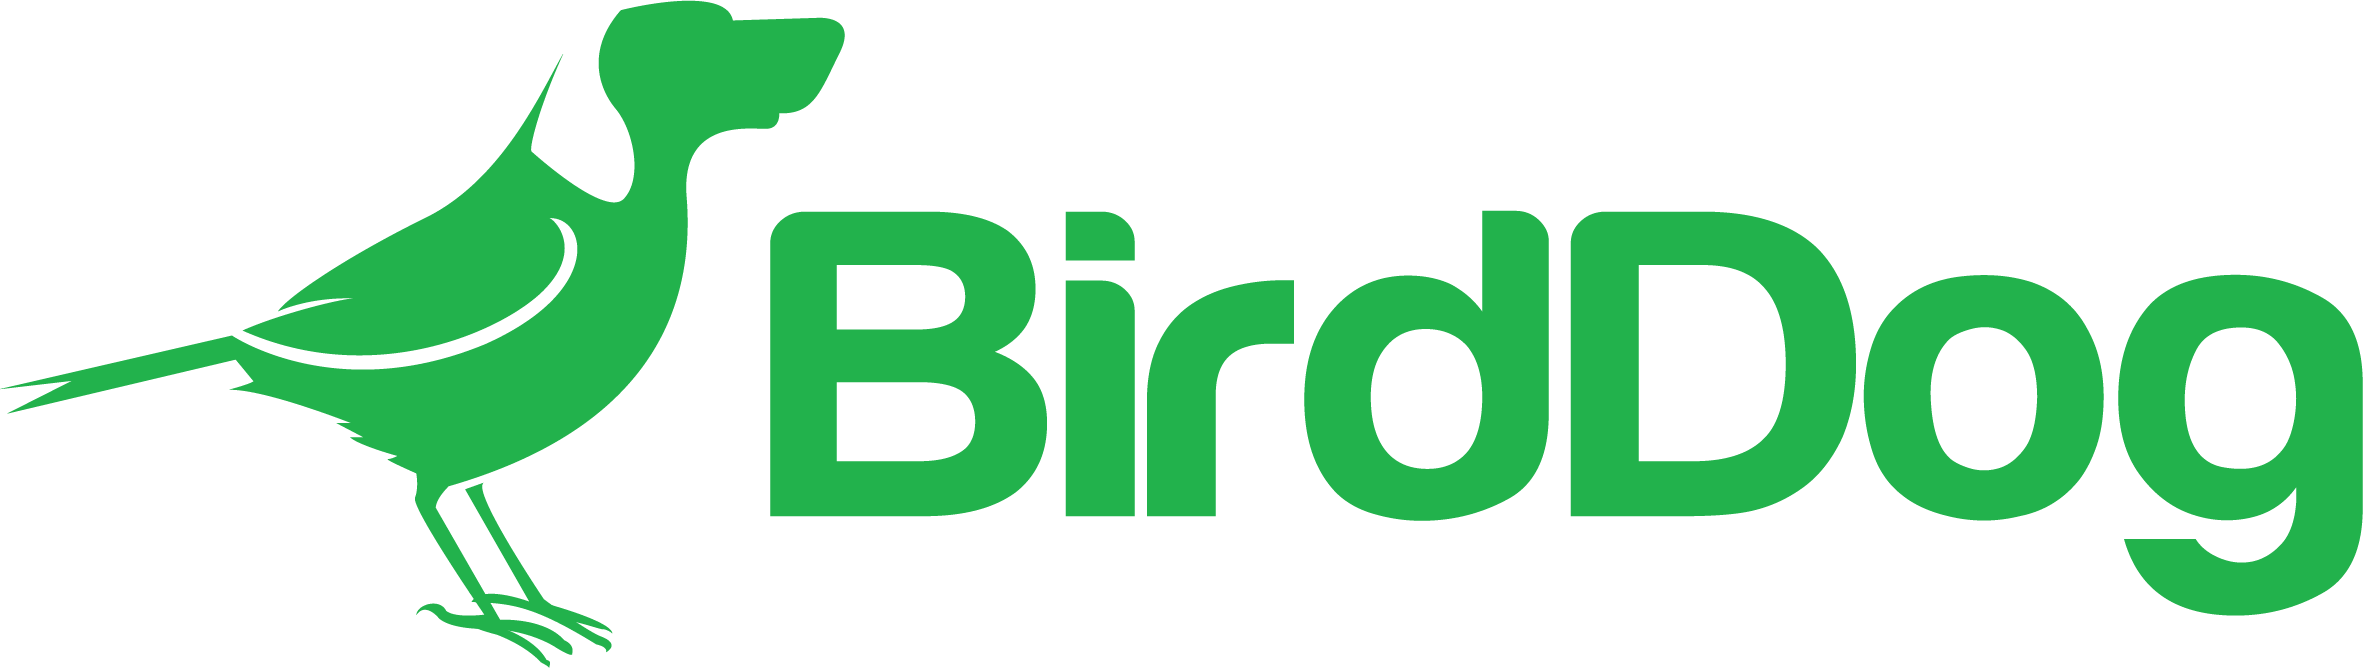 BirdDog Logo